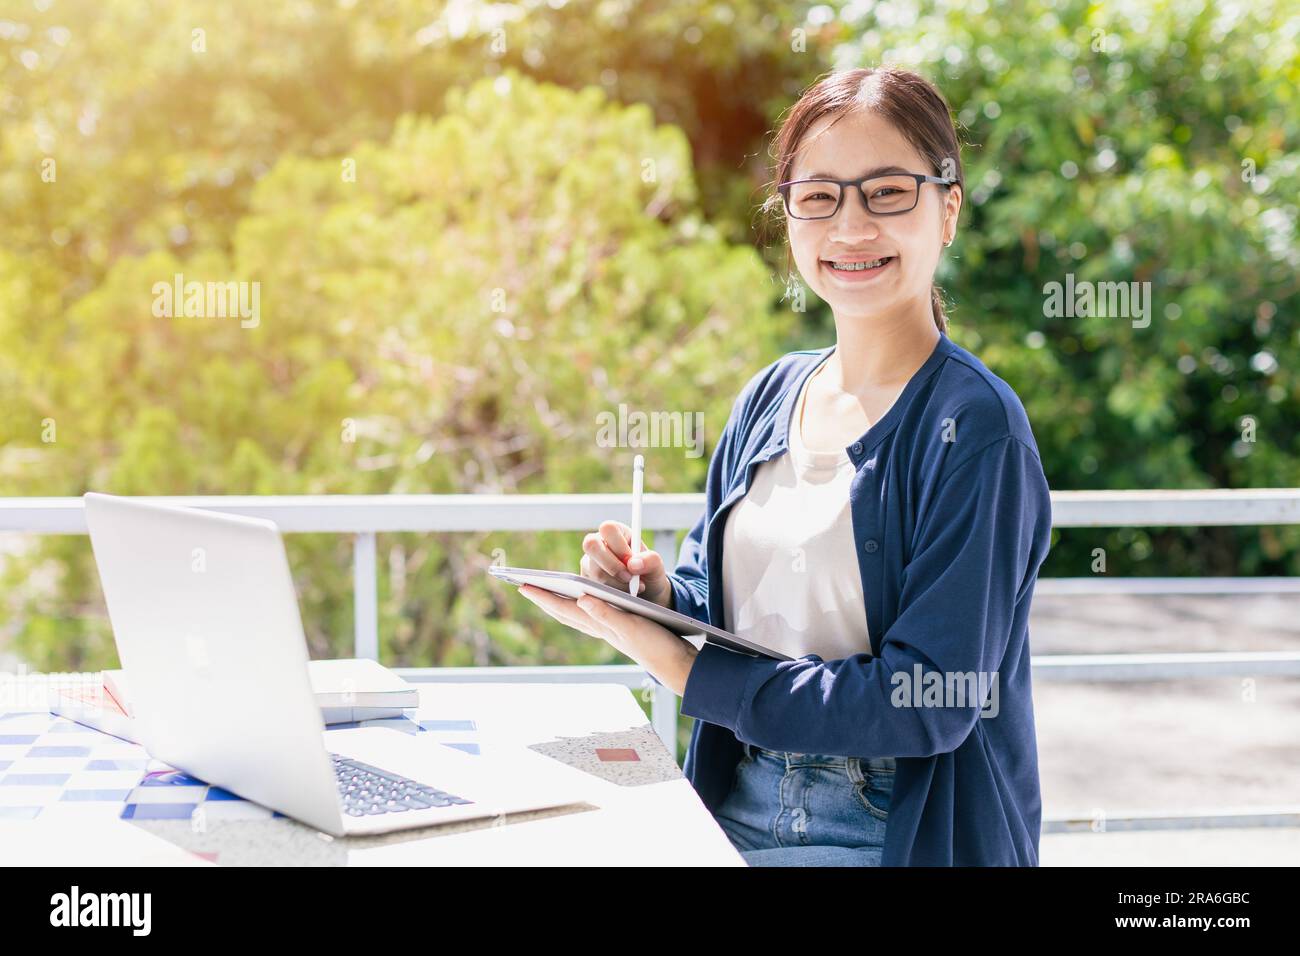 Asiatisches Teenager-Mädchen mit Laptop-Computer für Online-Lernzwecke oder Programmierer an der Universität. Stockfoto